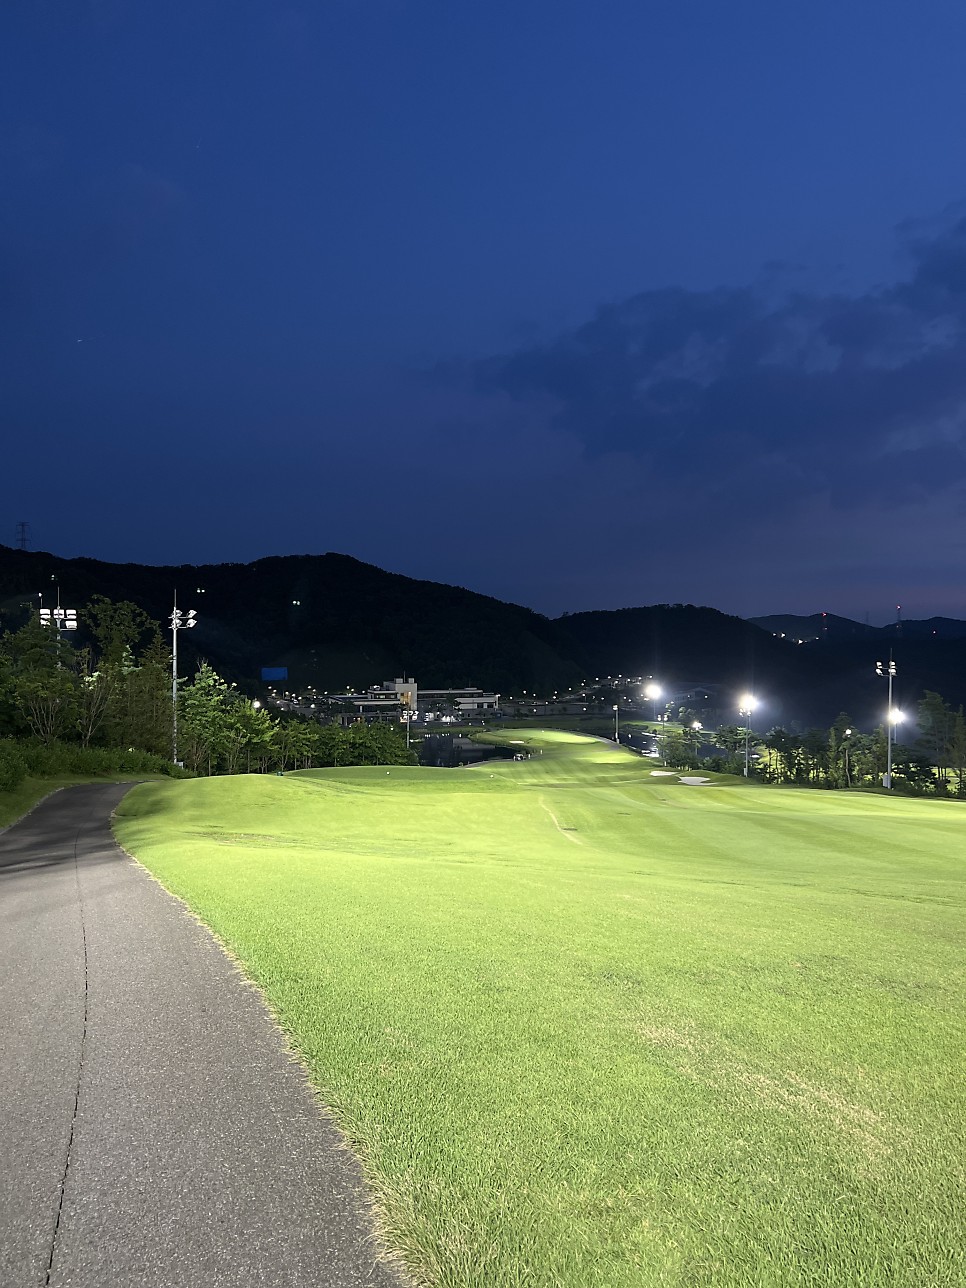 수도권에서 야간 조명 밝은 경기도 퍼블릭 골프장 루나힐스안성cc